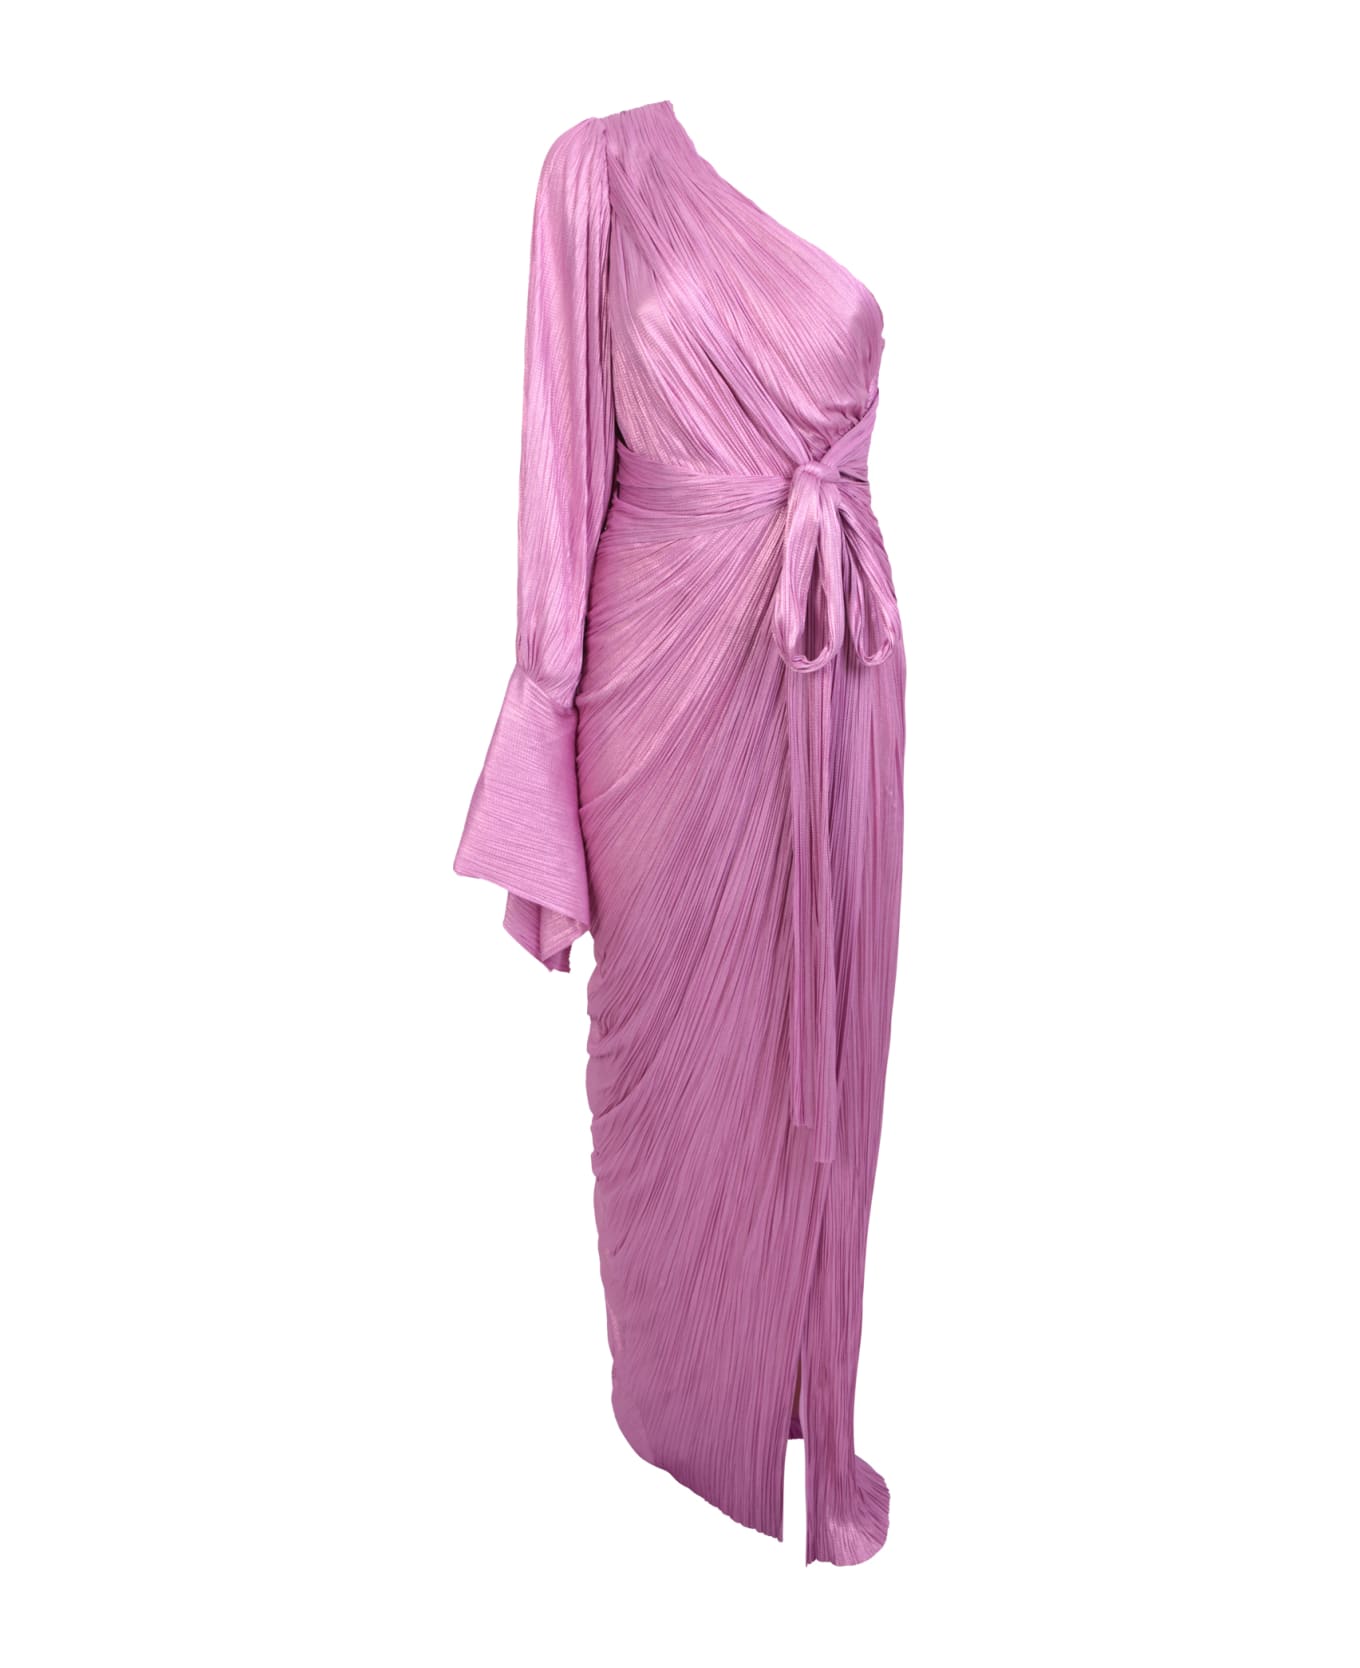 Maria Lucia Hohan Pink Palmer Dress - Pink